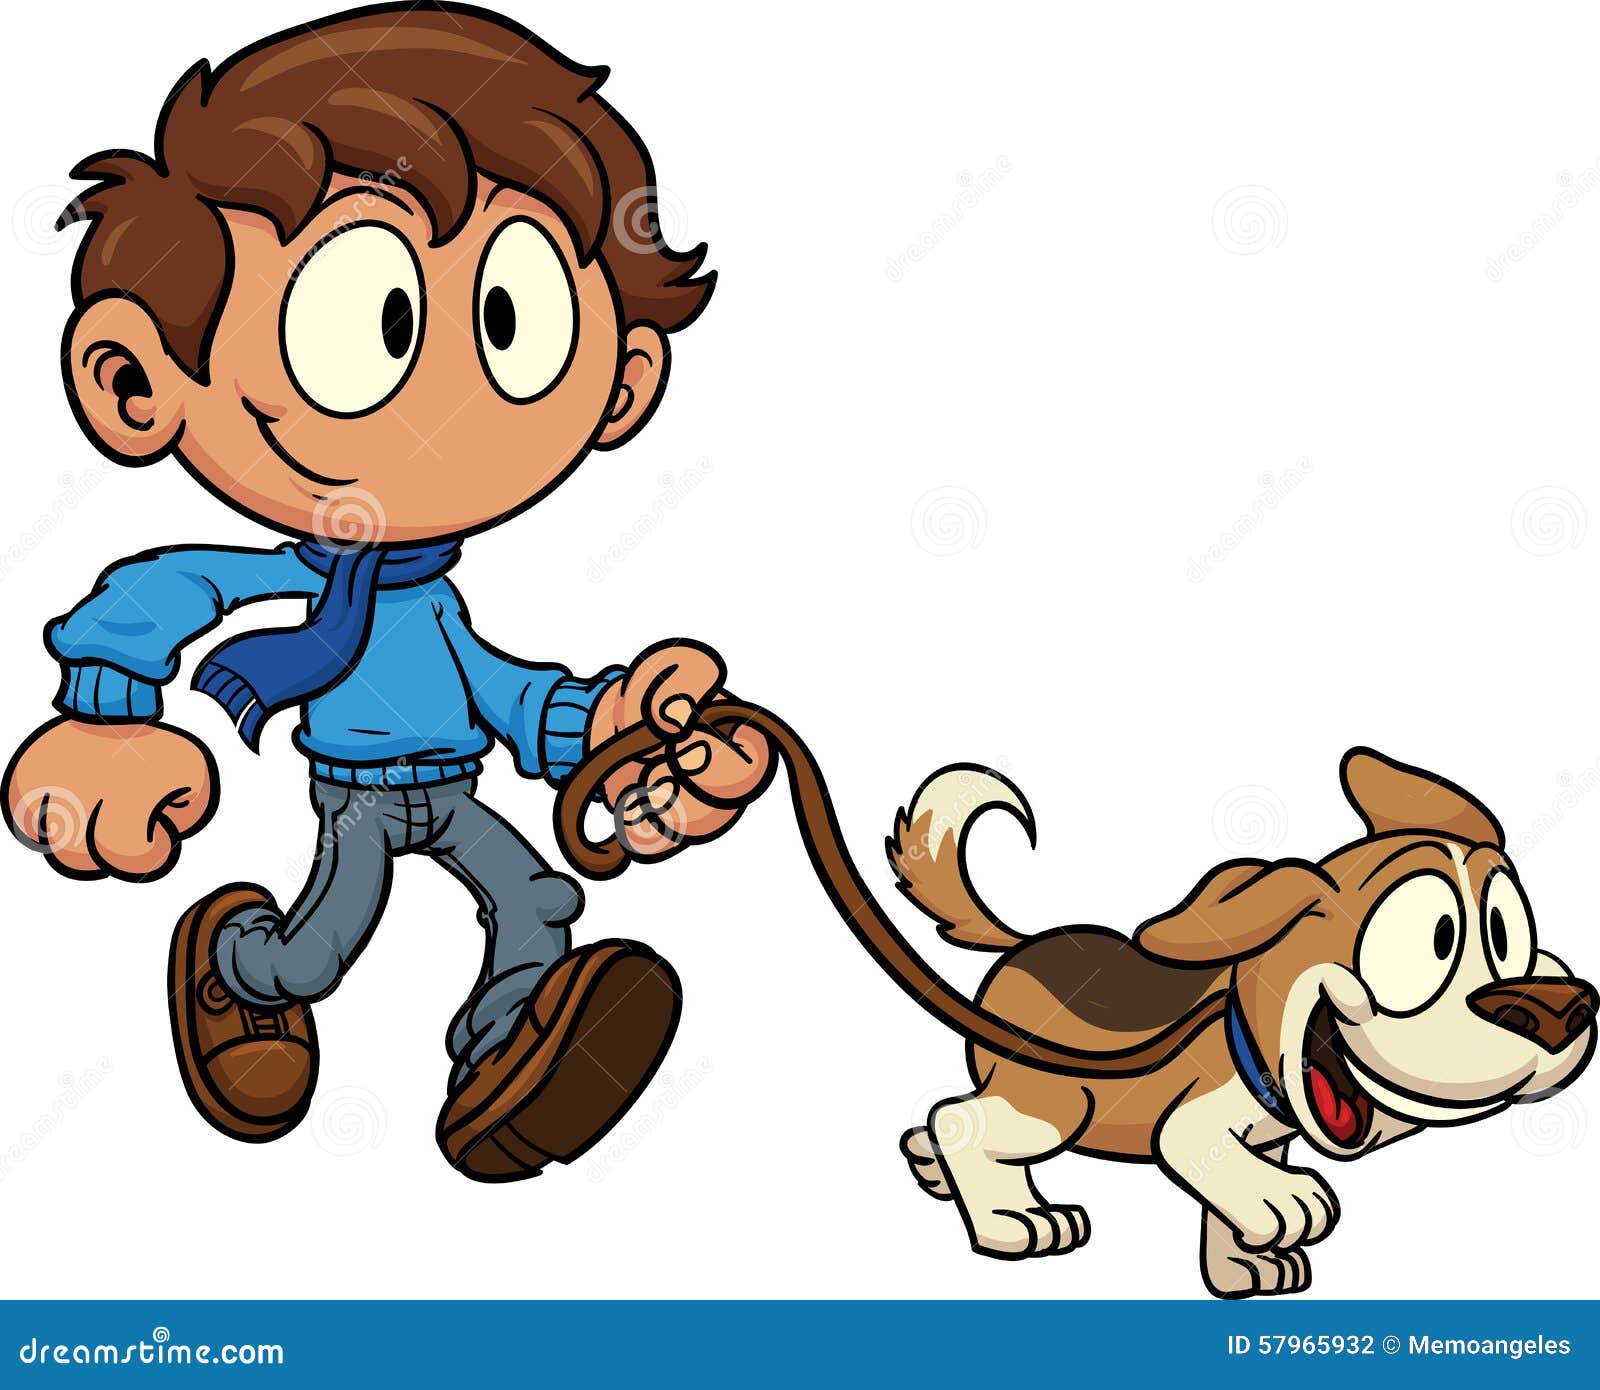 kid-walking-dog-vector-clip-art-illustra